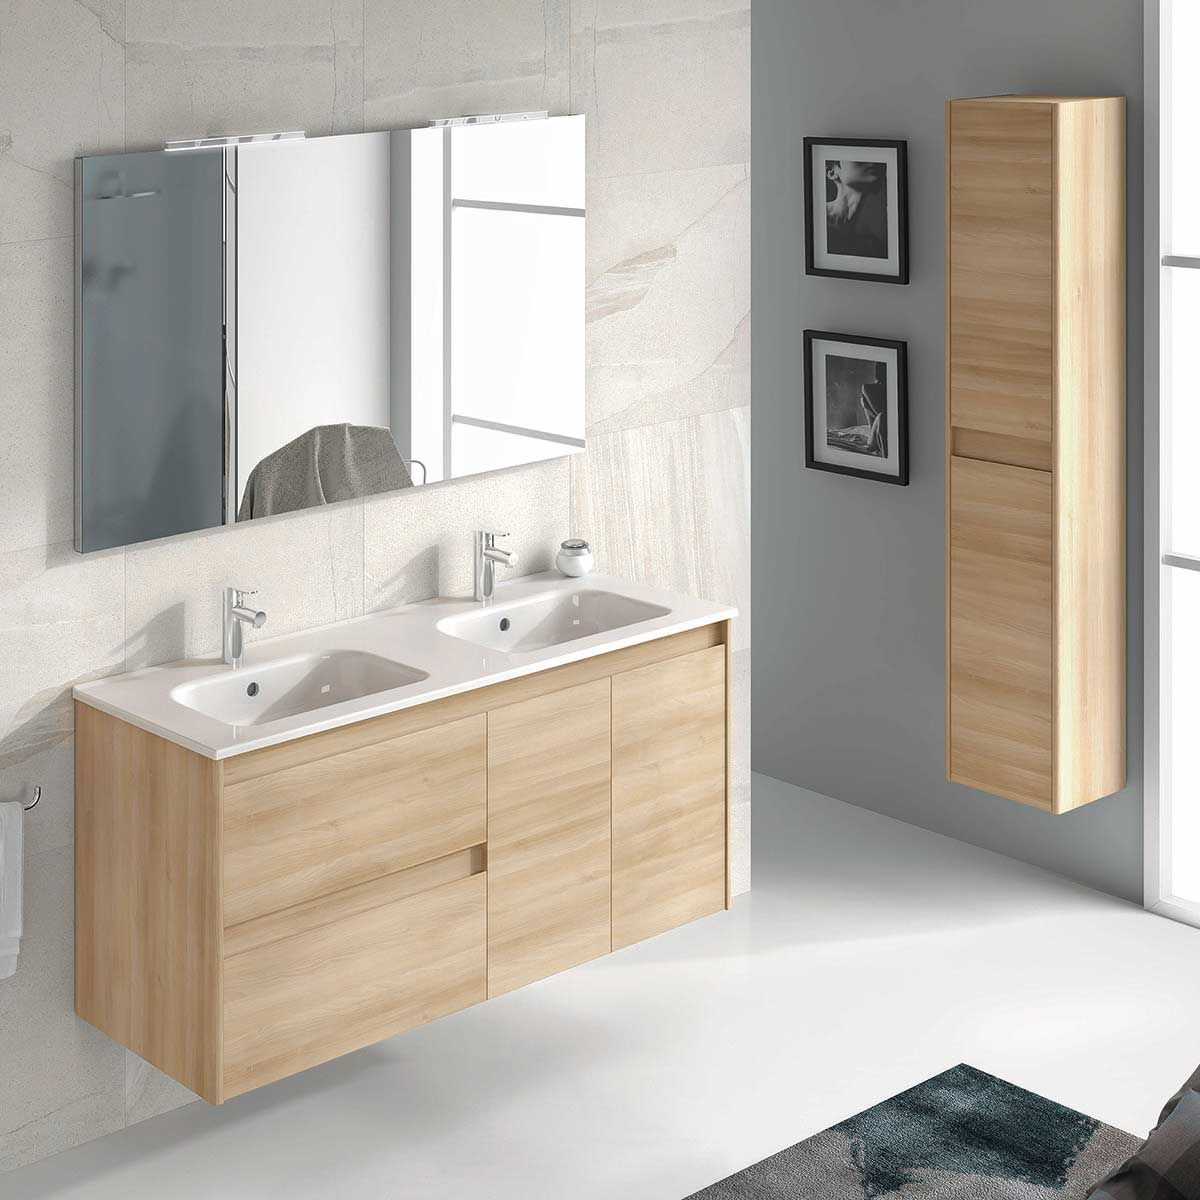 Types of Bathroom Vanity Lighting - Ambra DBL Vanity